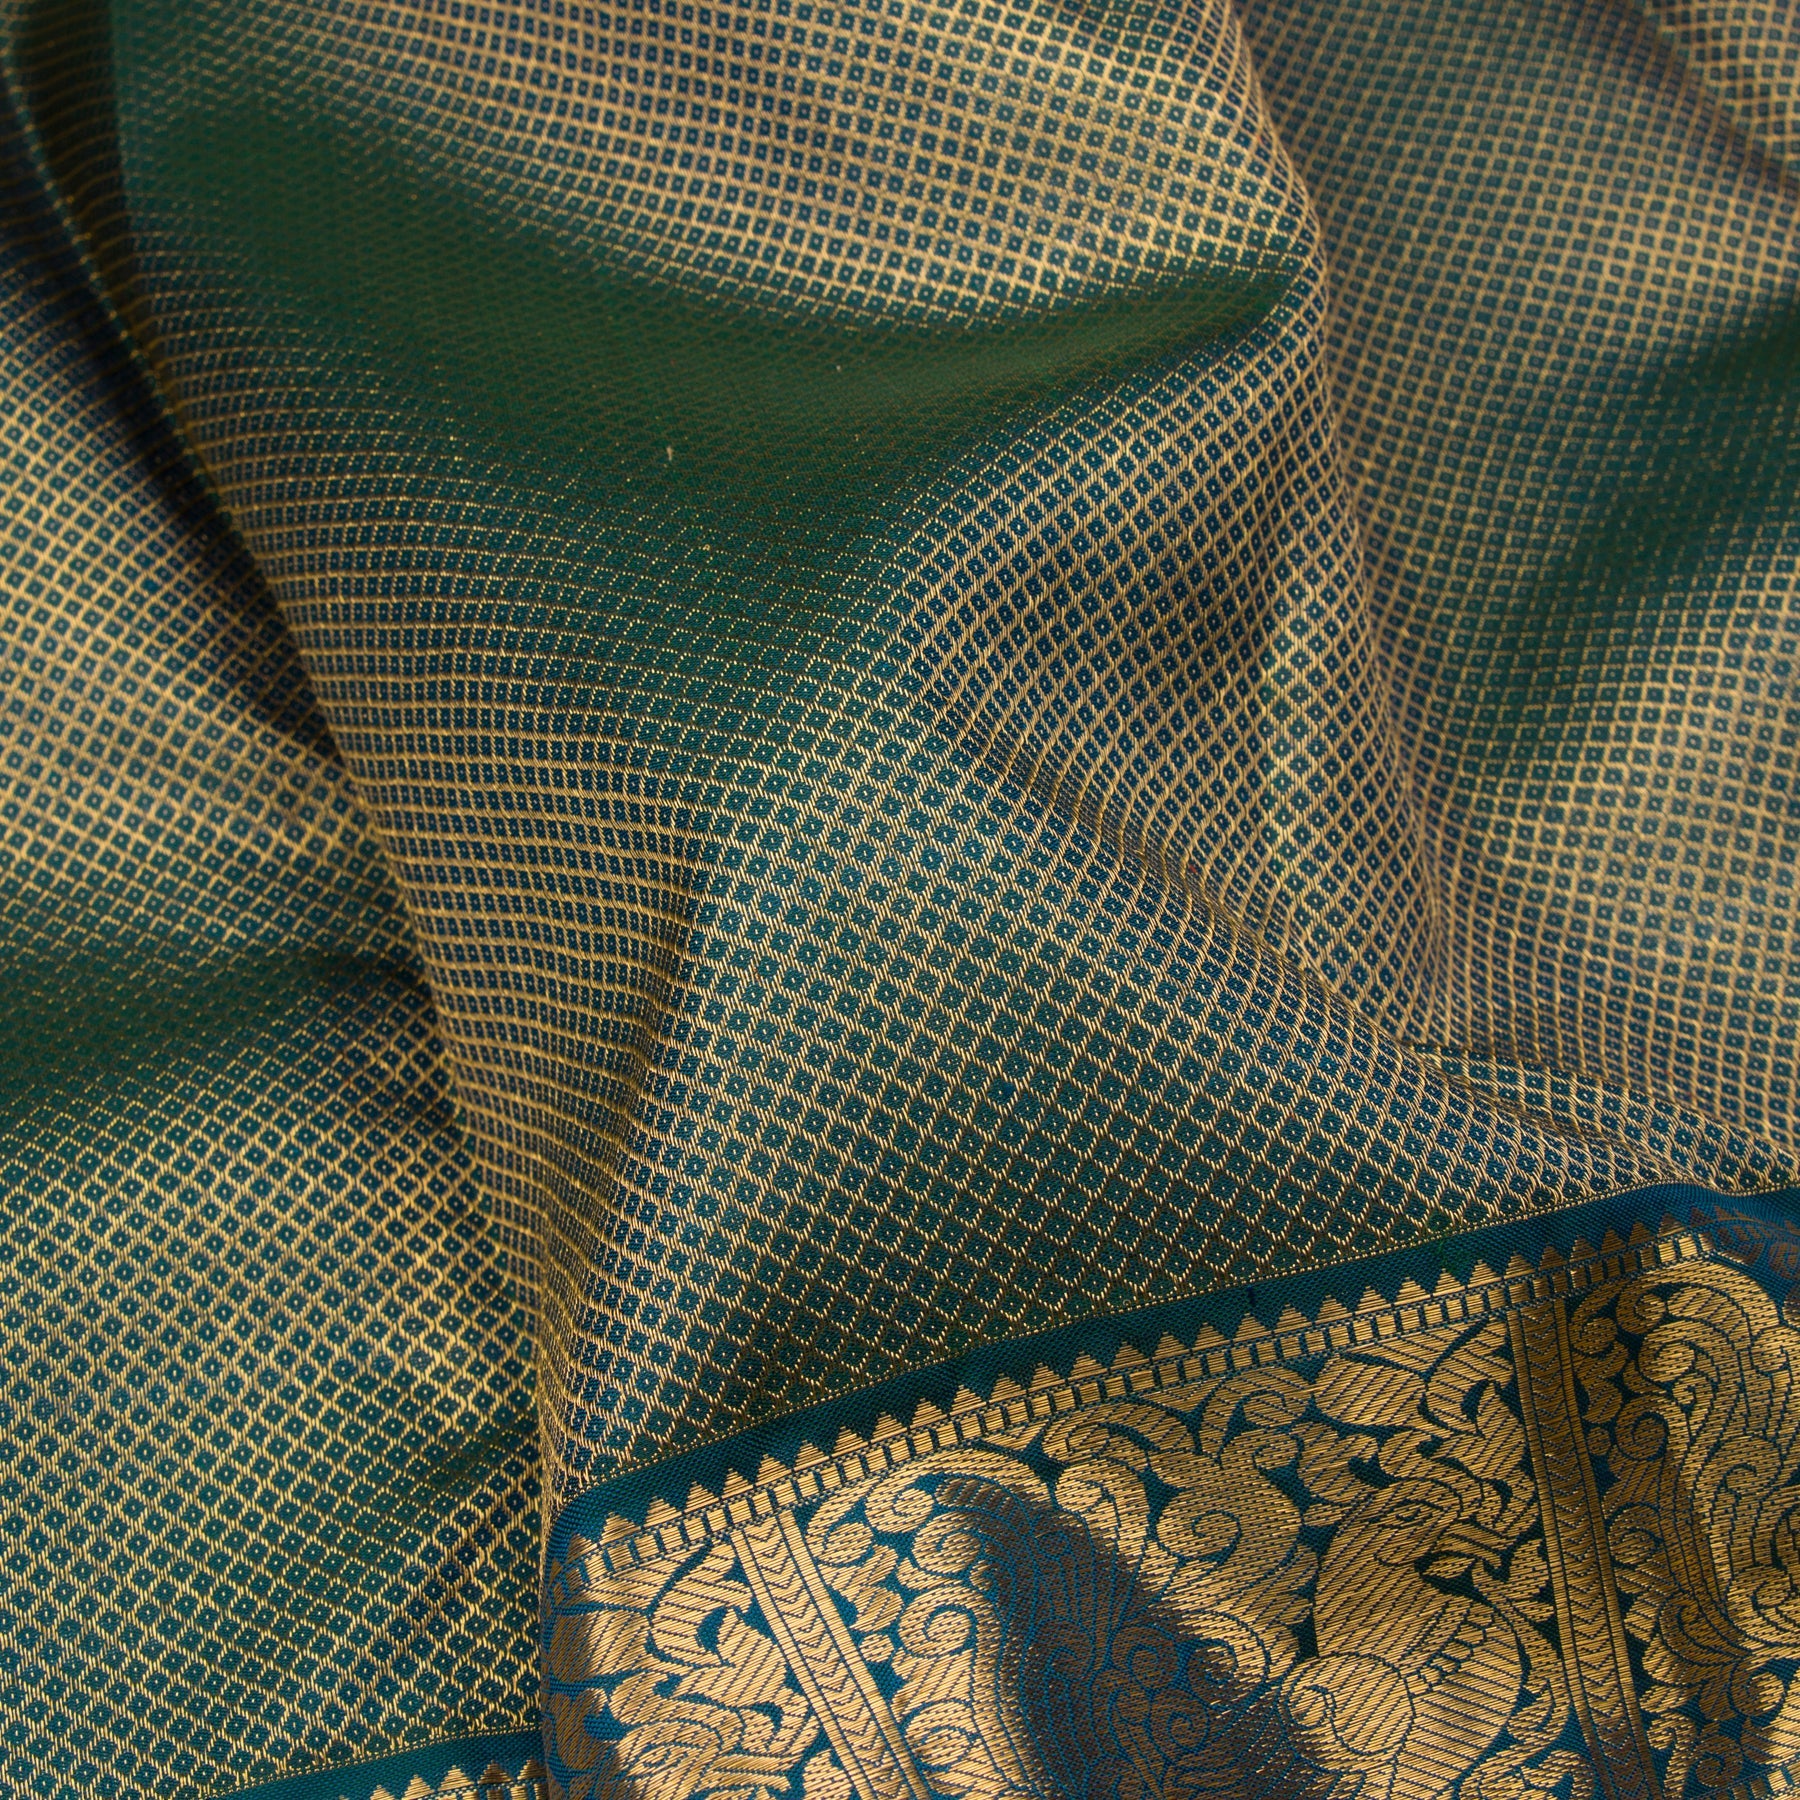 Kanakavalli Kanjivaram Silk Sari 23-110-HS001-08337 - Fabric View